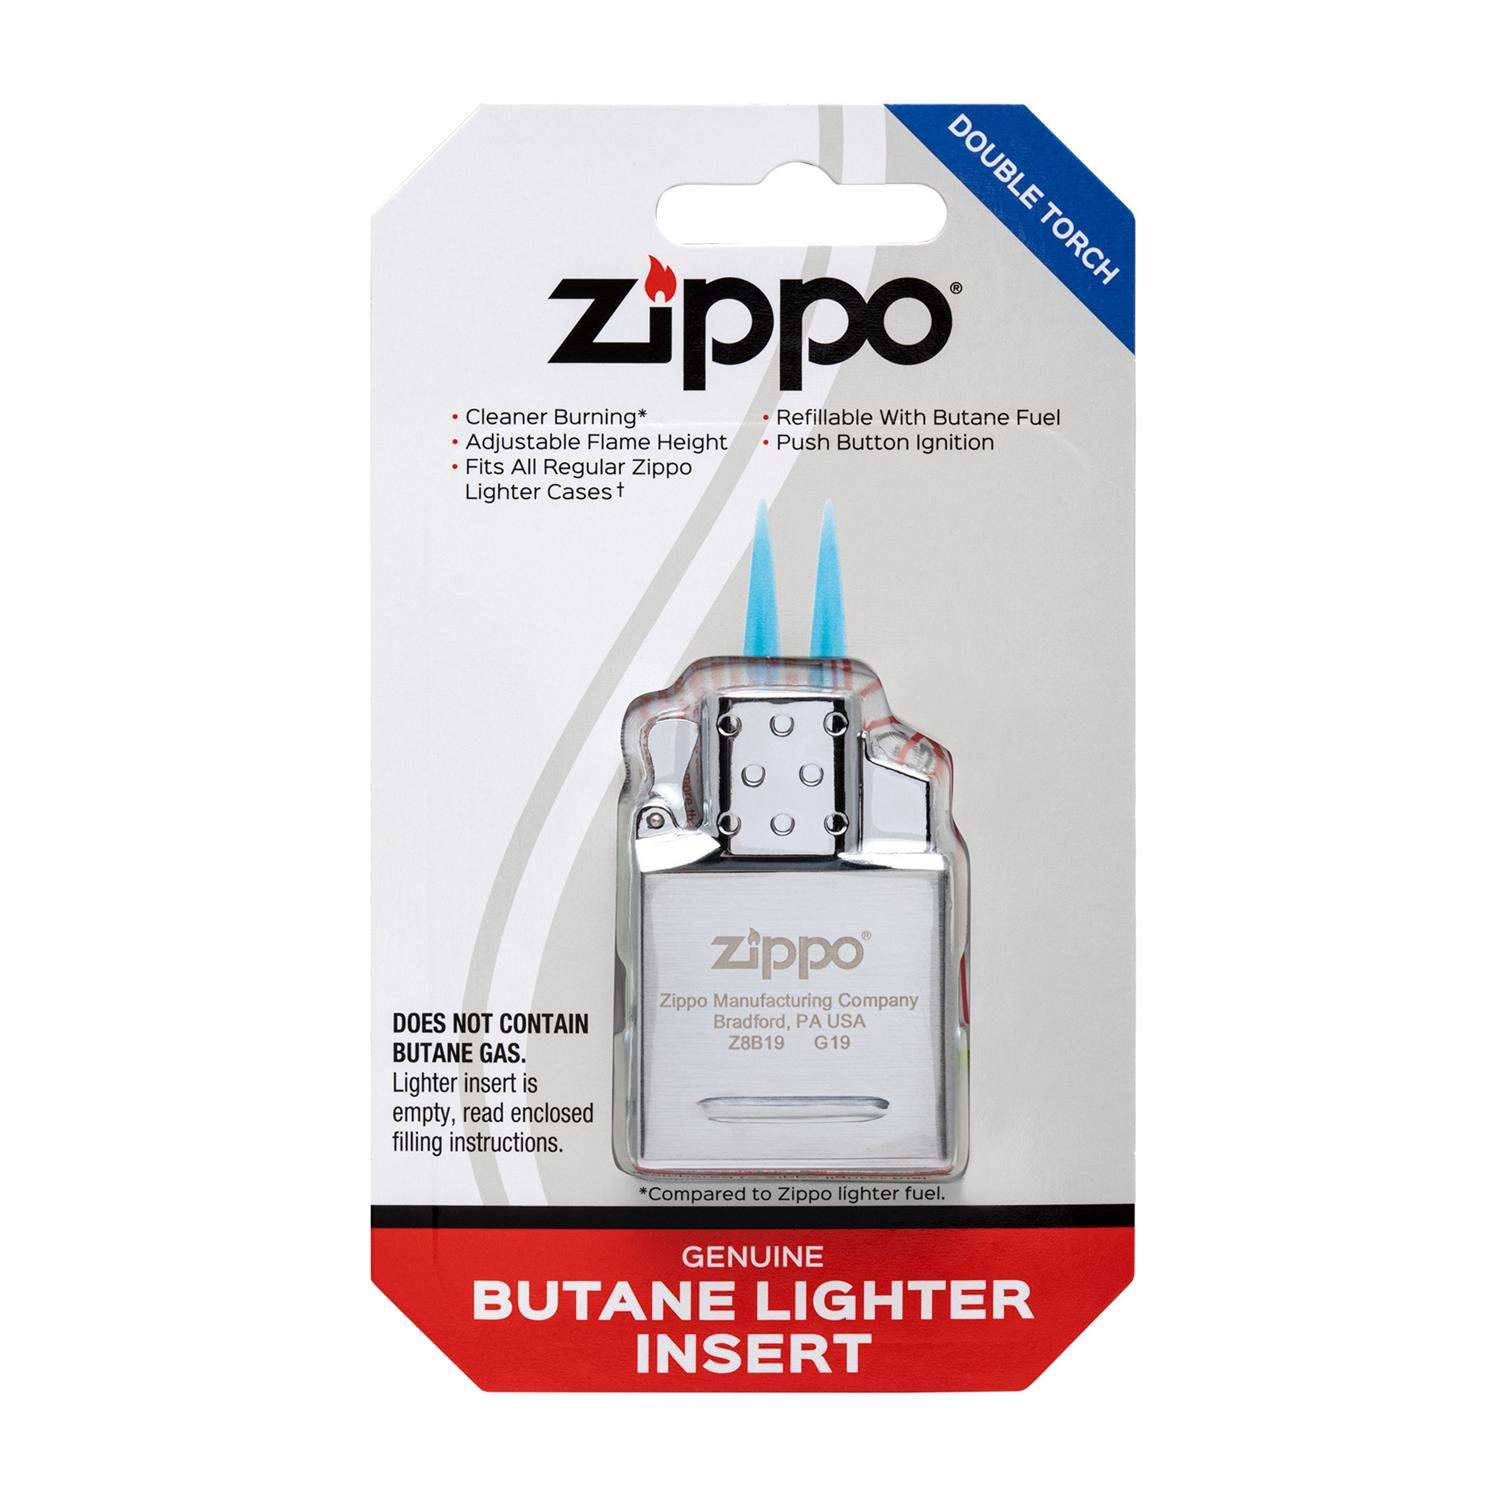 værdighed knoglebrud indarbejde Zippo Silver Double Torch Lighter Insert 0.03 oz 1 pk - Ace Hardware